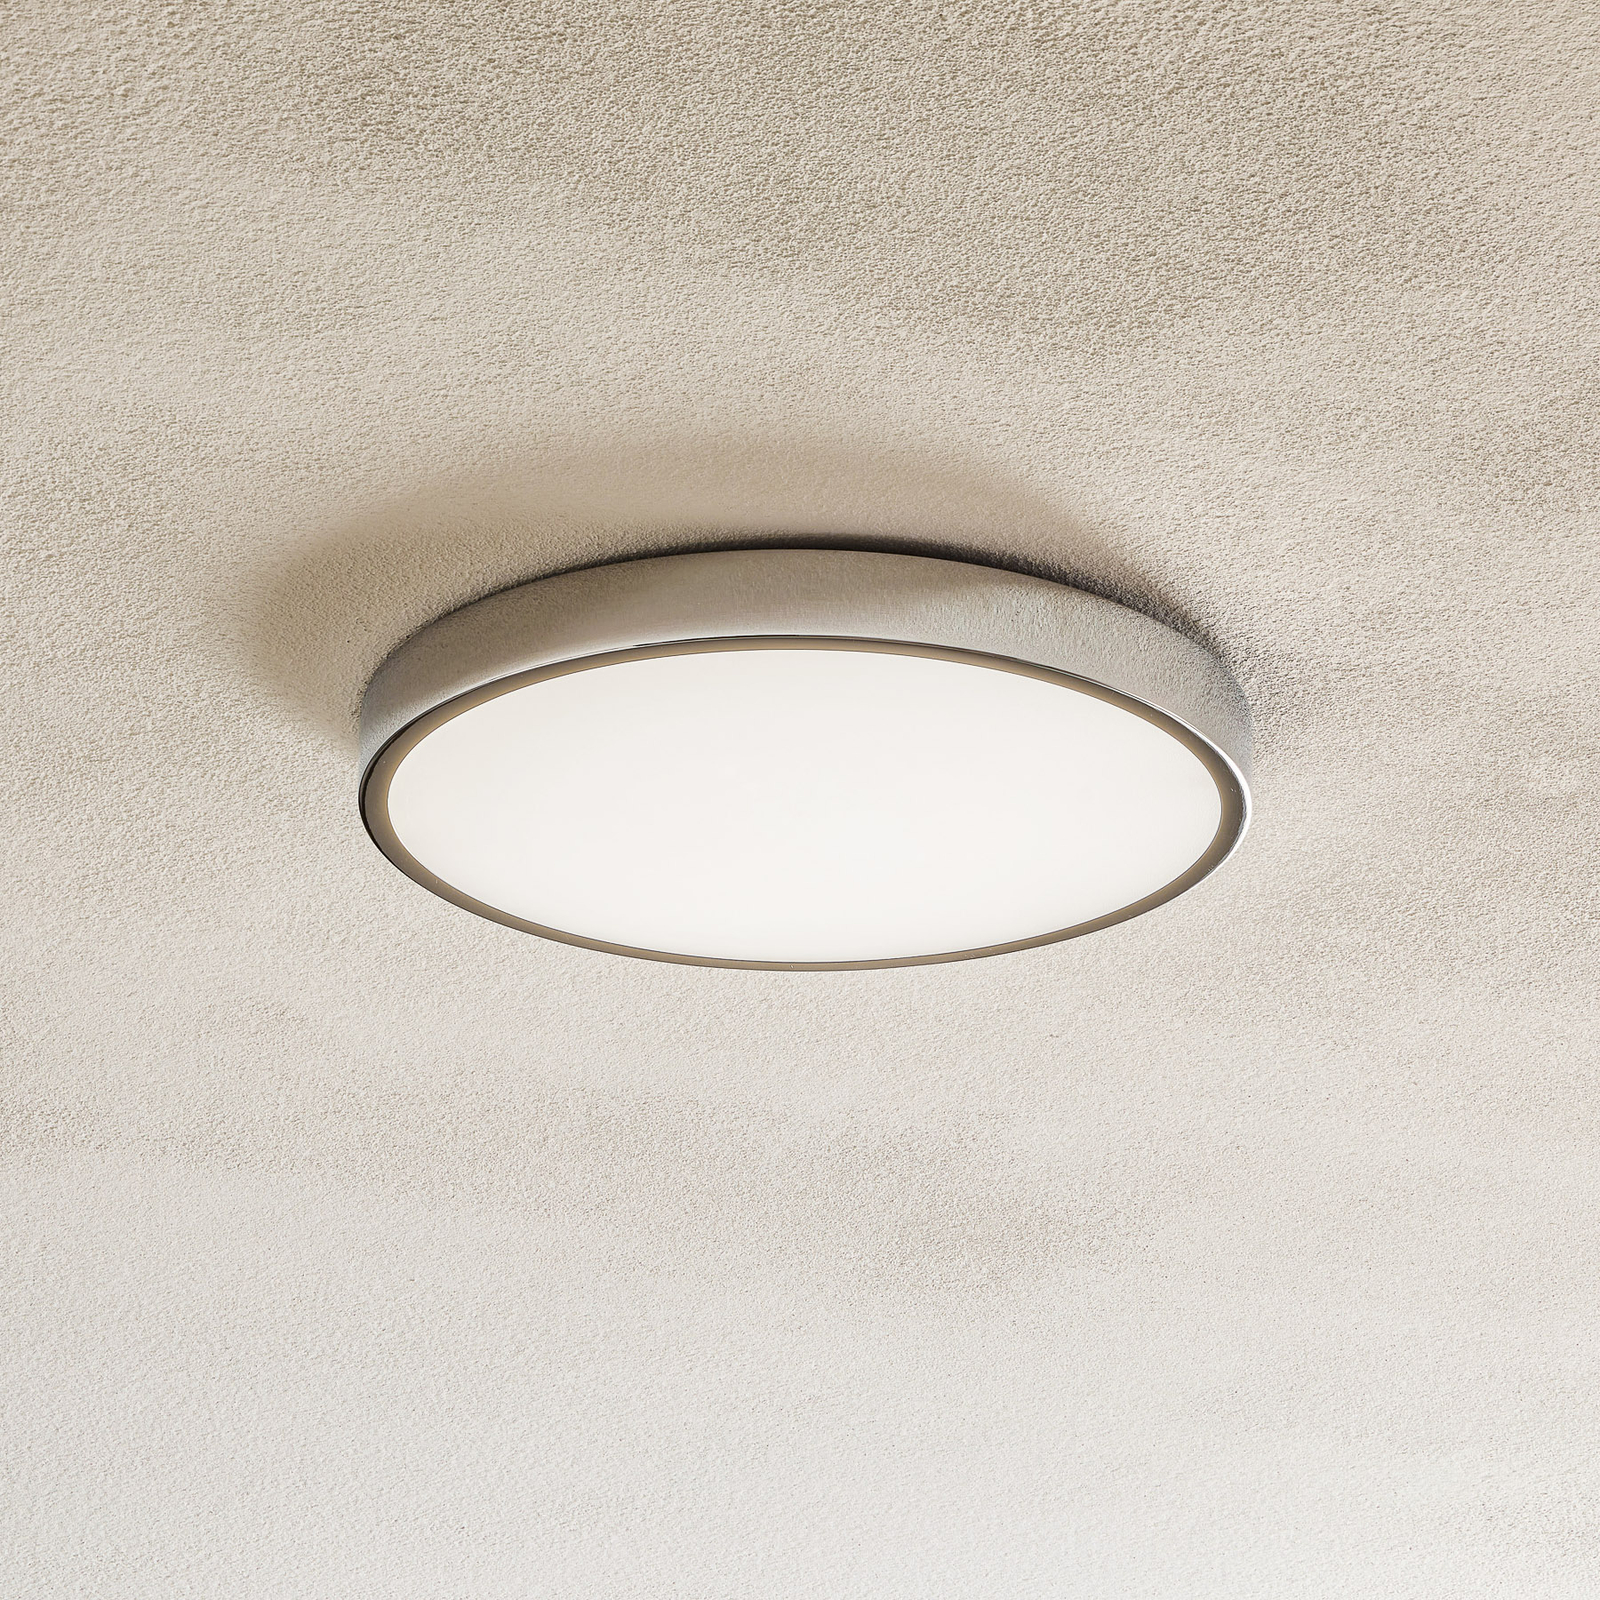 Bully LED ceiling light, chrome, Ø 24 cm